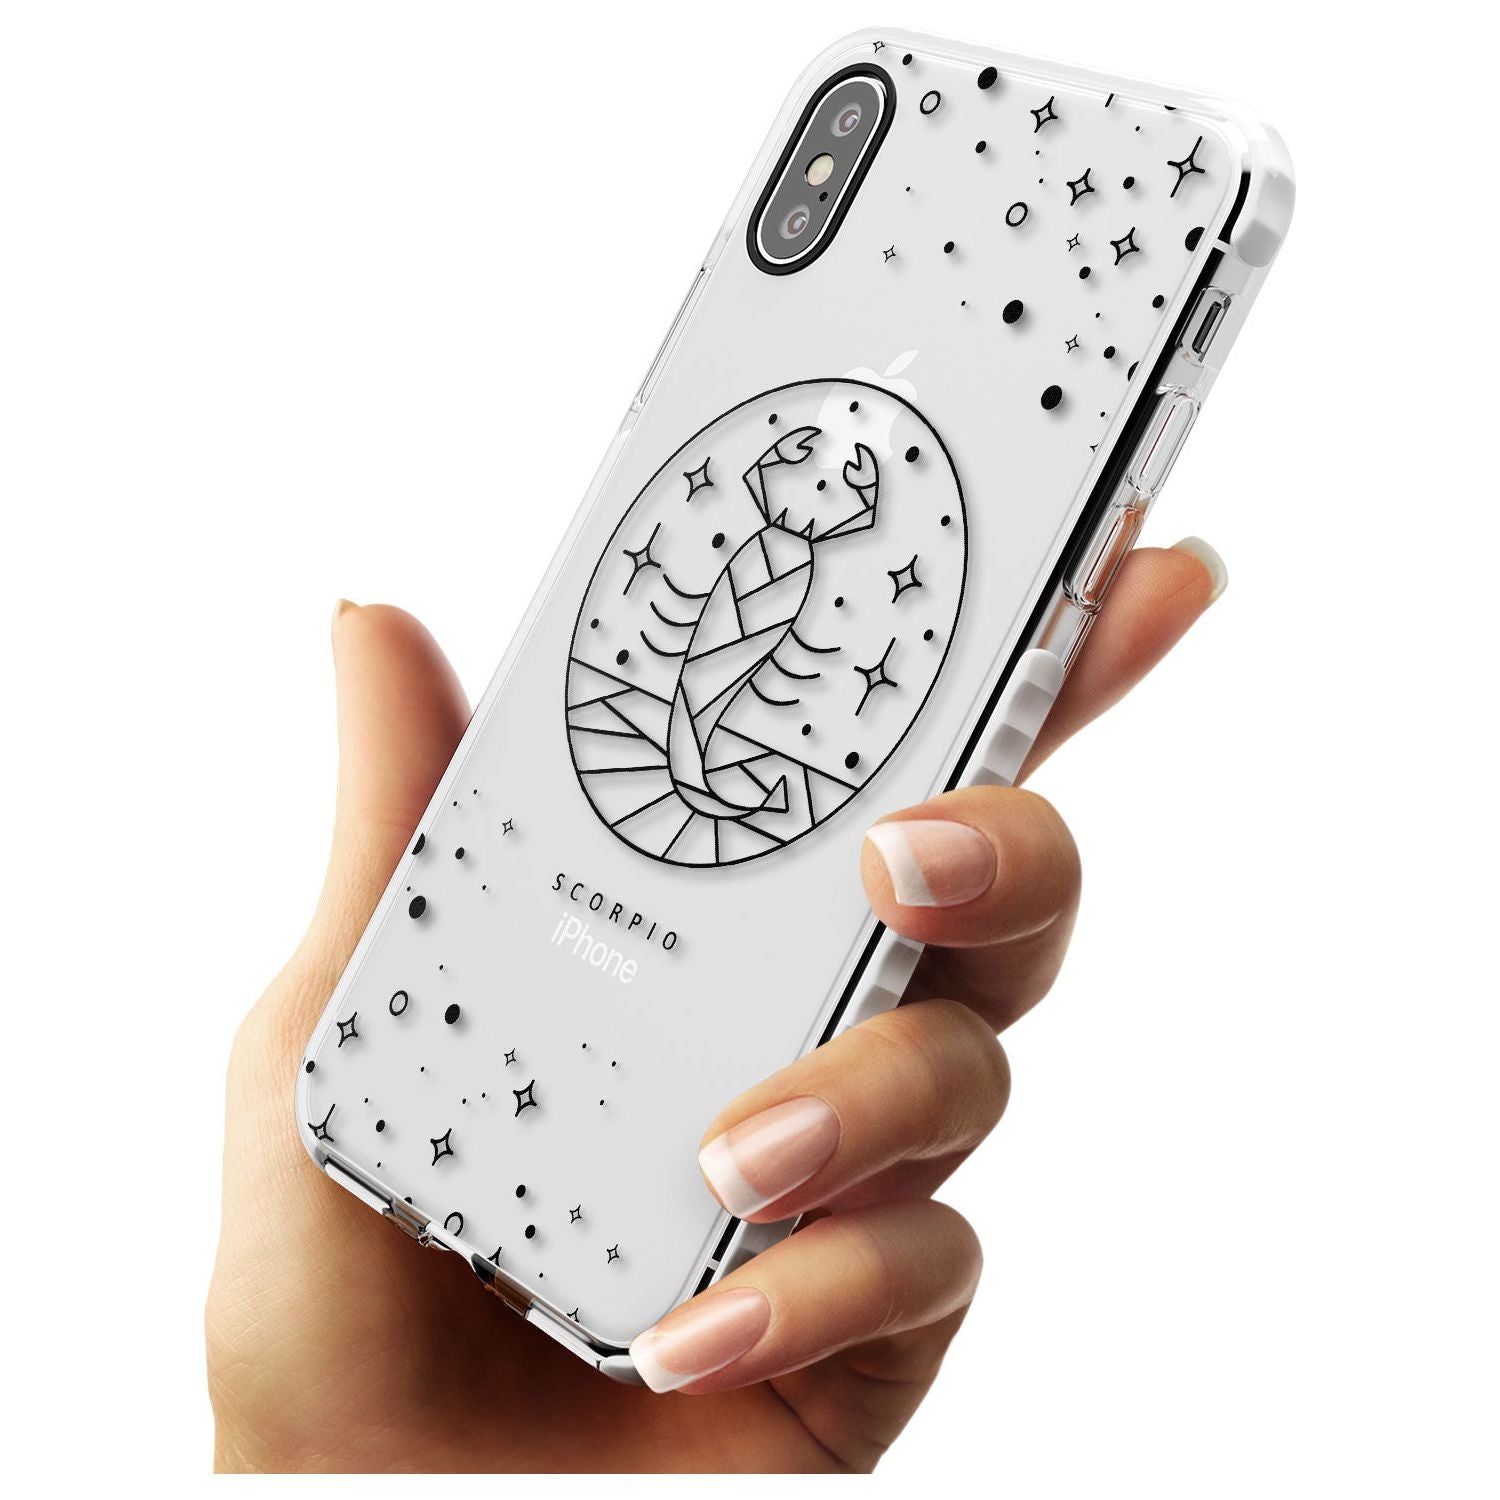 Scorpio Emblem - Transparent Design Impact Phone Case for iPhone X XS Max XR